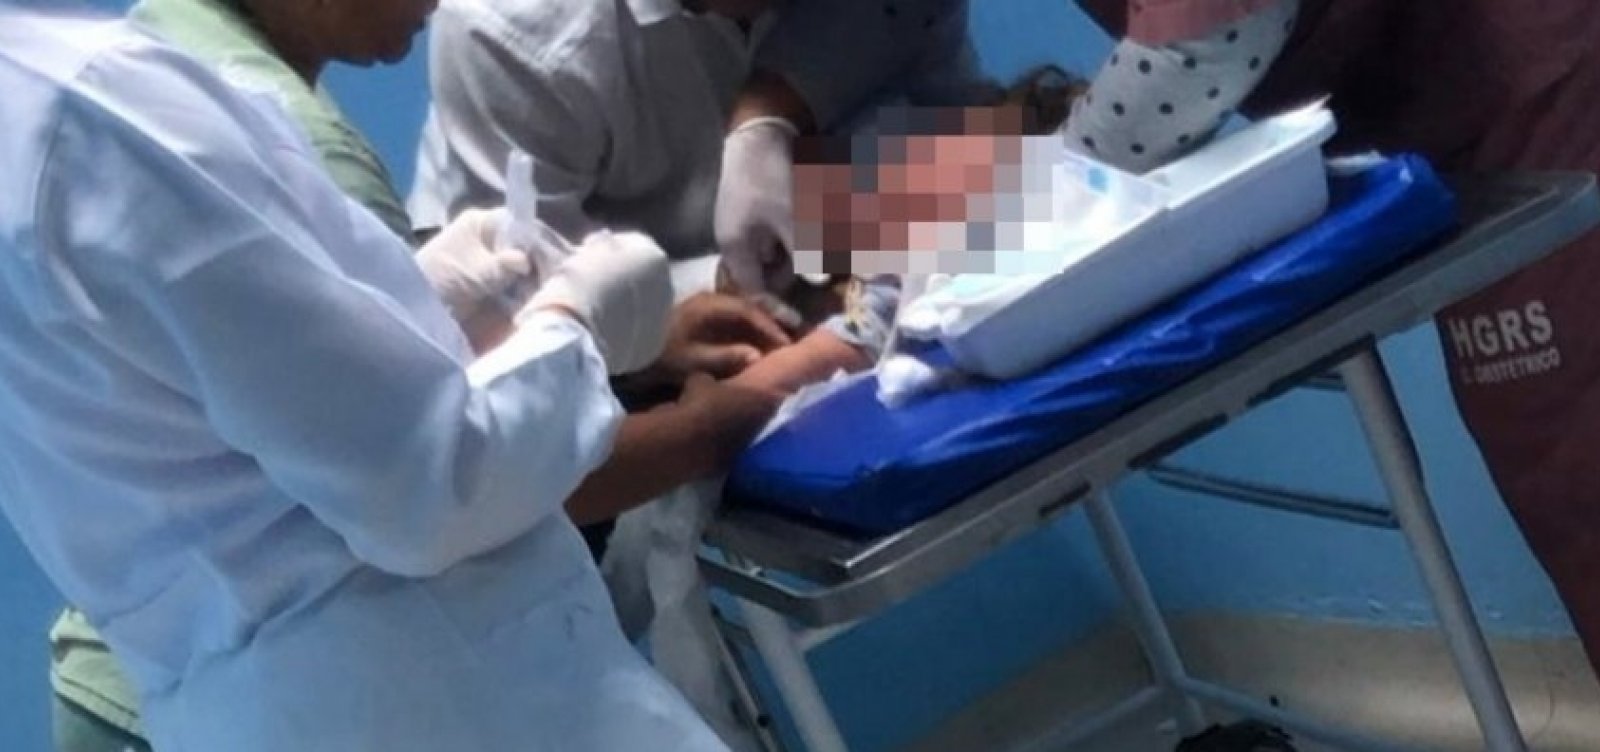 Bebê de um ano é hospitalizado após ingerir cocaína em Pituaçu